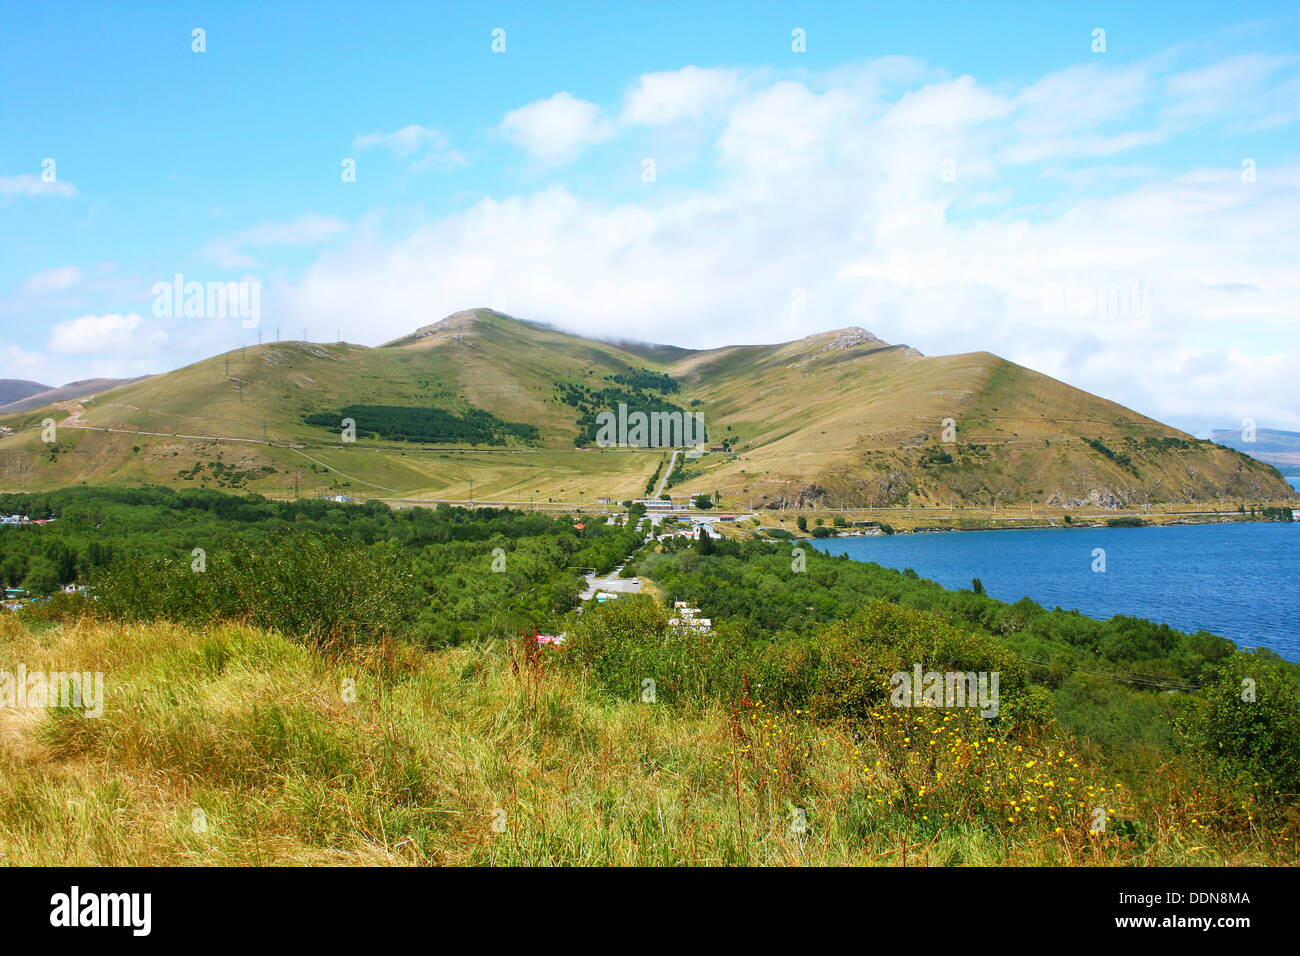 Lake Sevan and mountains in Armenia. Stock Photo